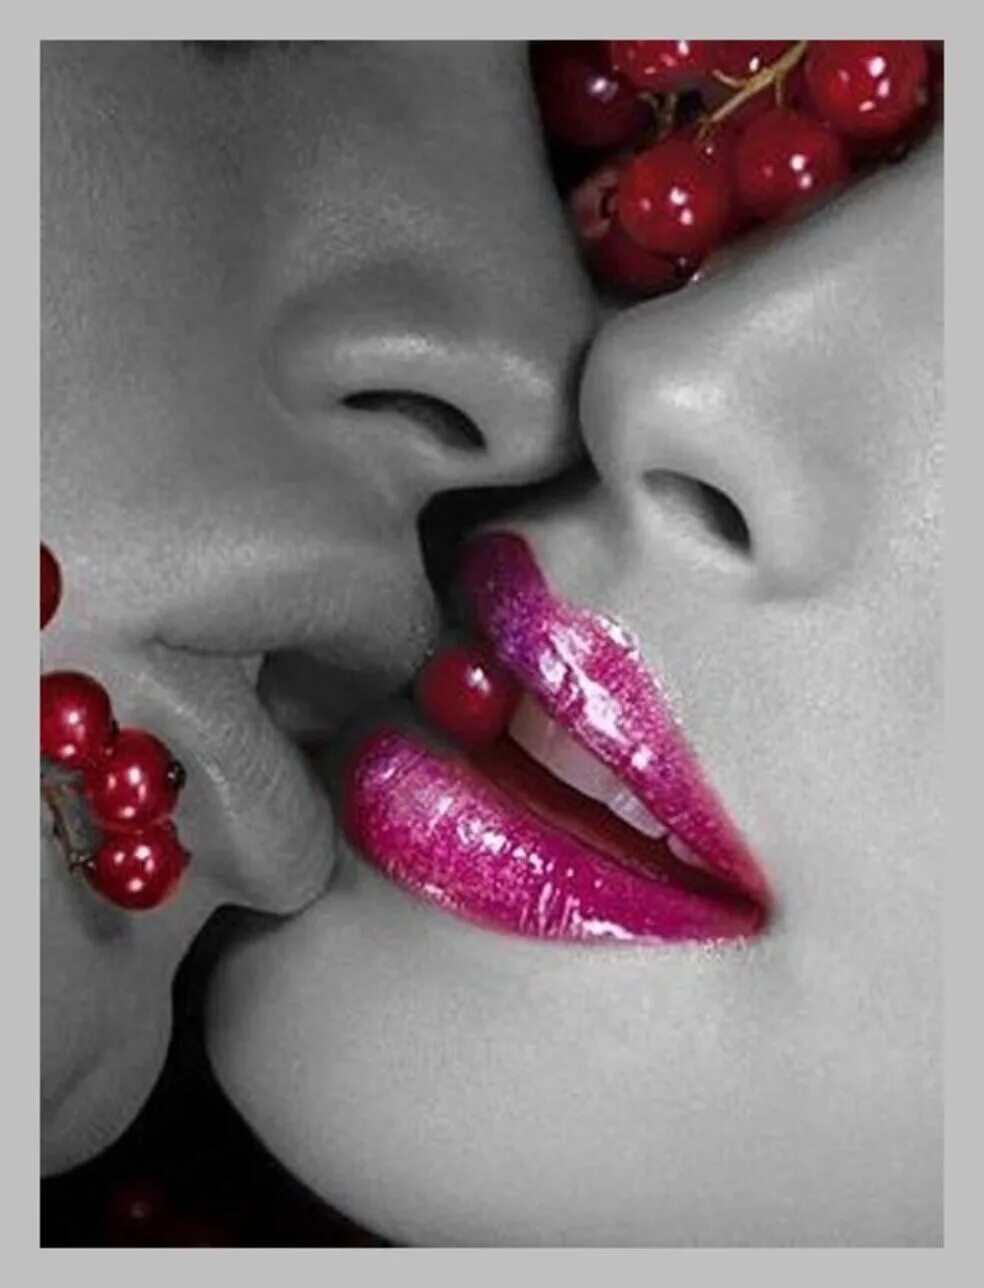 Сладкий вкус малина на твоих губах песня. Поцелуй. Поцелуй в губы. Сладкие губы. Сочный поцелуй.